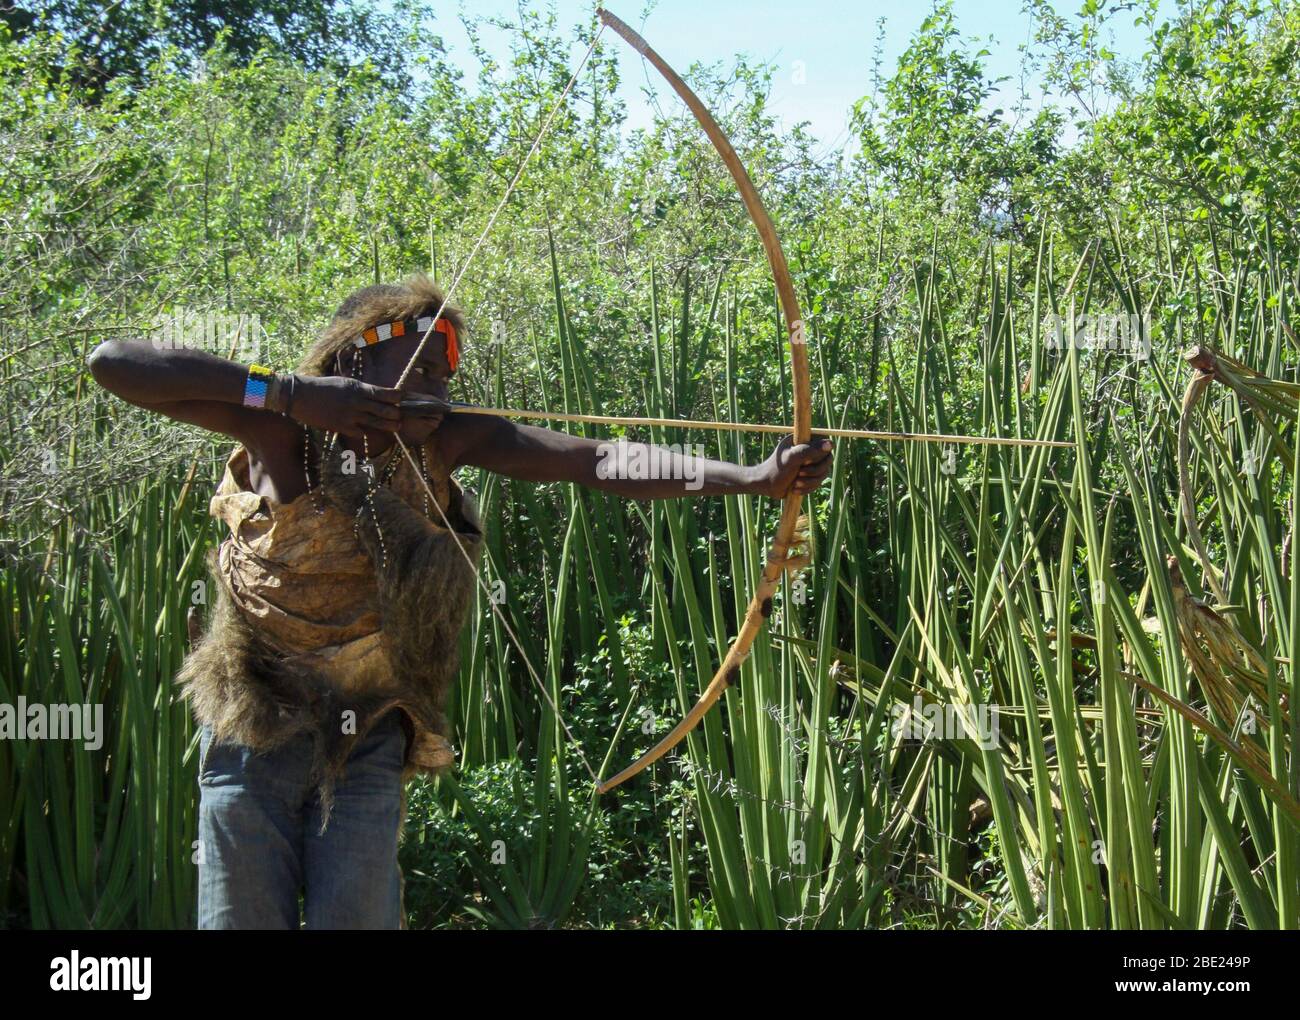 Hadza (Hadzabe) homme visant une flèche à un oiseau pendant une expédition de chasse. Hatzabe est une petite tribu de chasseurs cueilleurs en Afrique de l'est. Photographié Banque D'Images